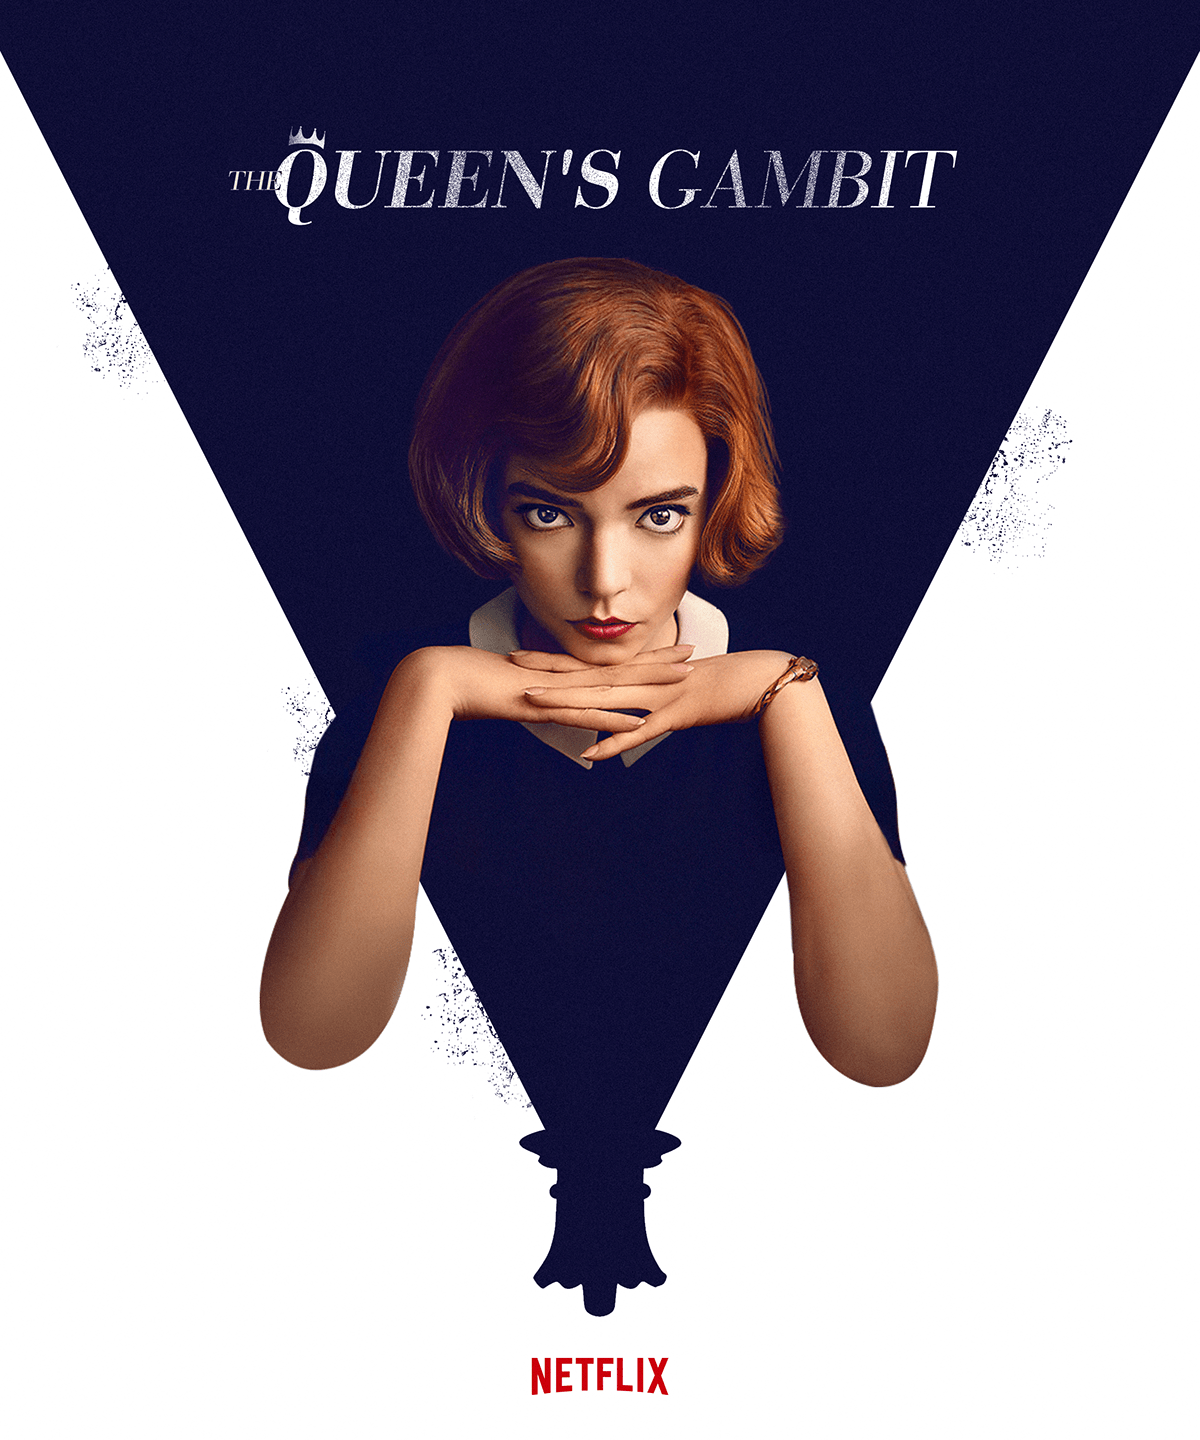 The Queen's Gambit - Beth Harmon on Behance